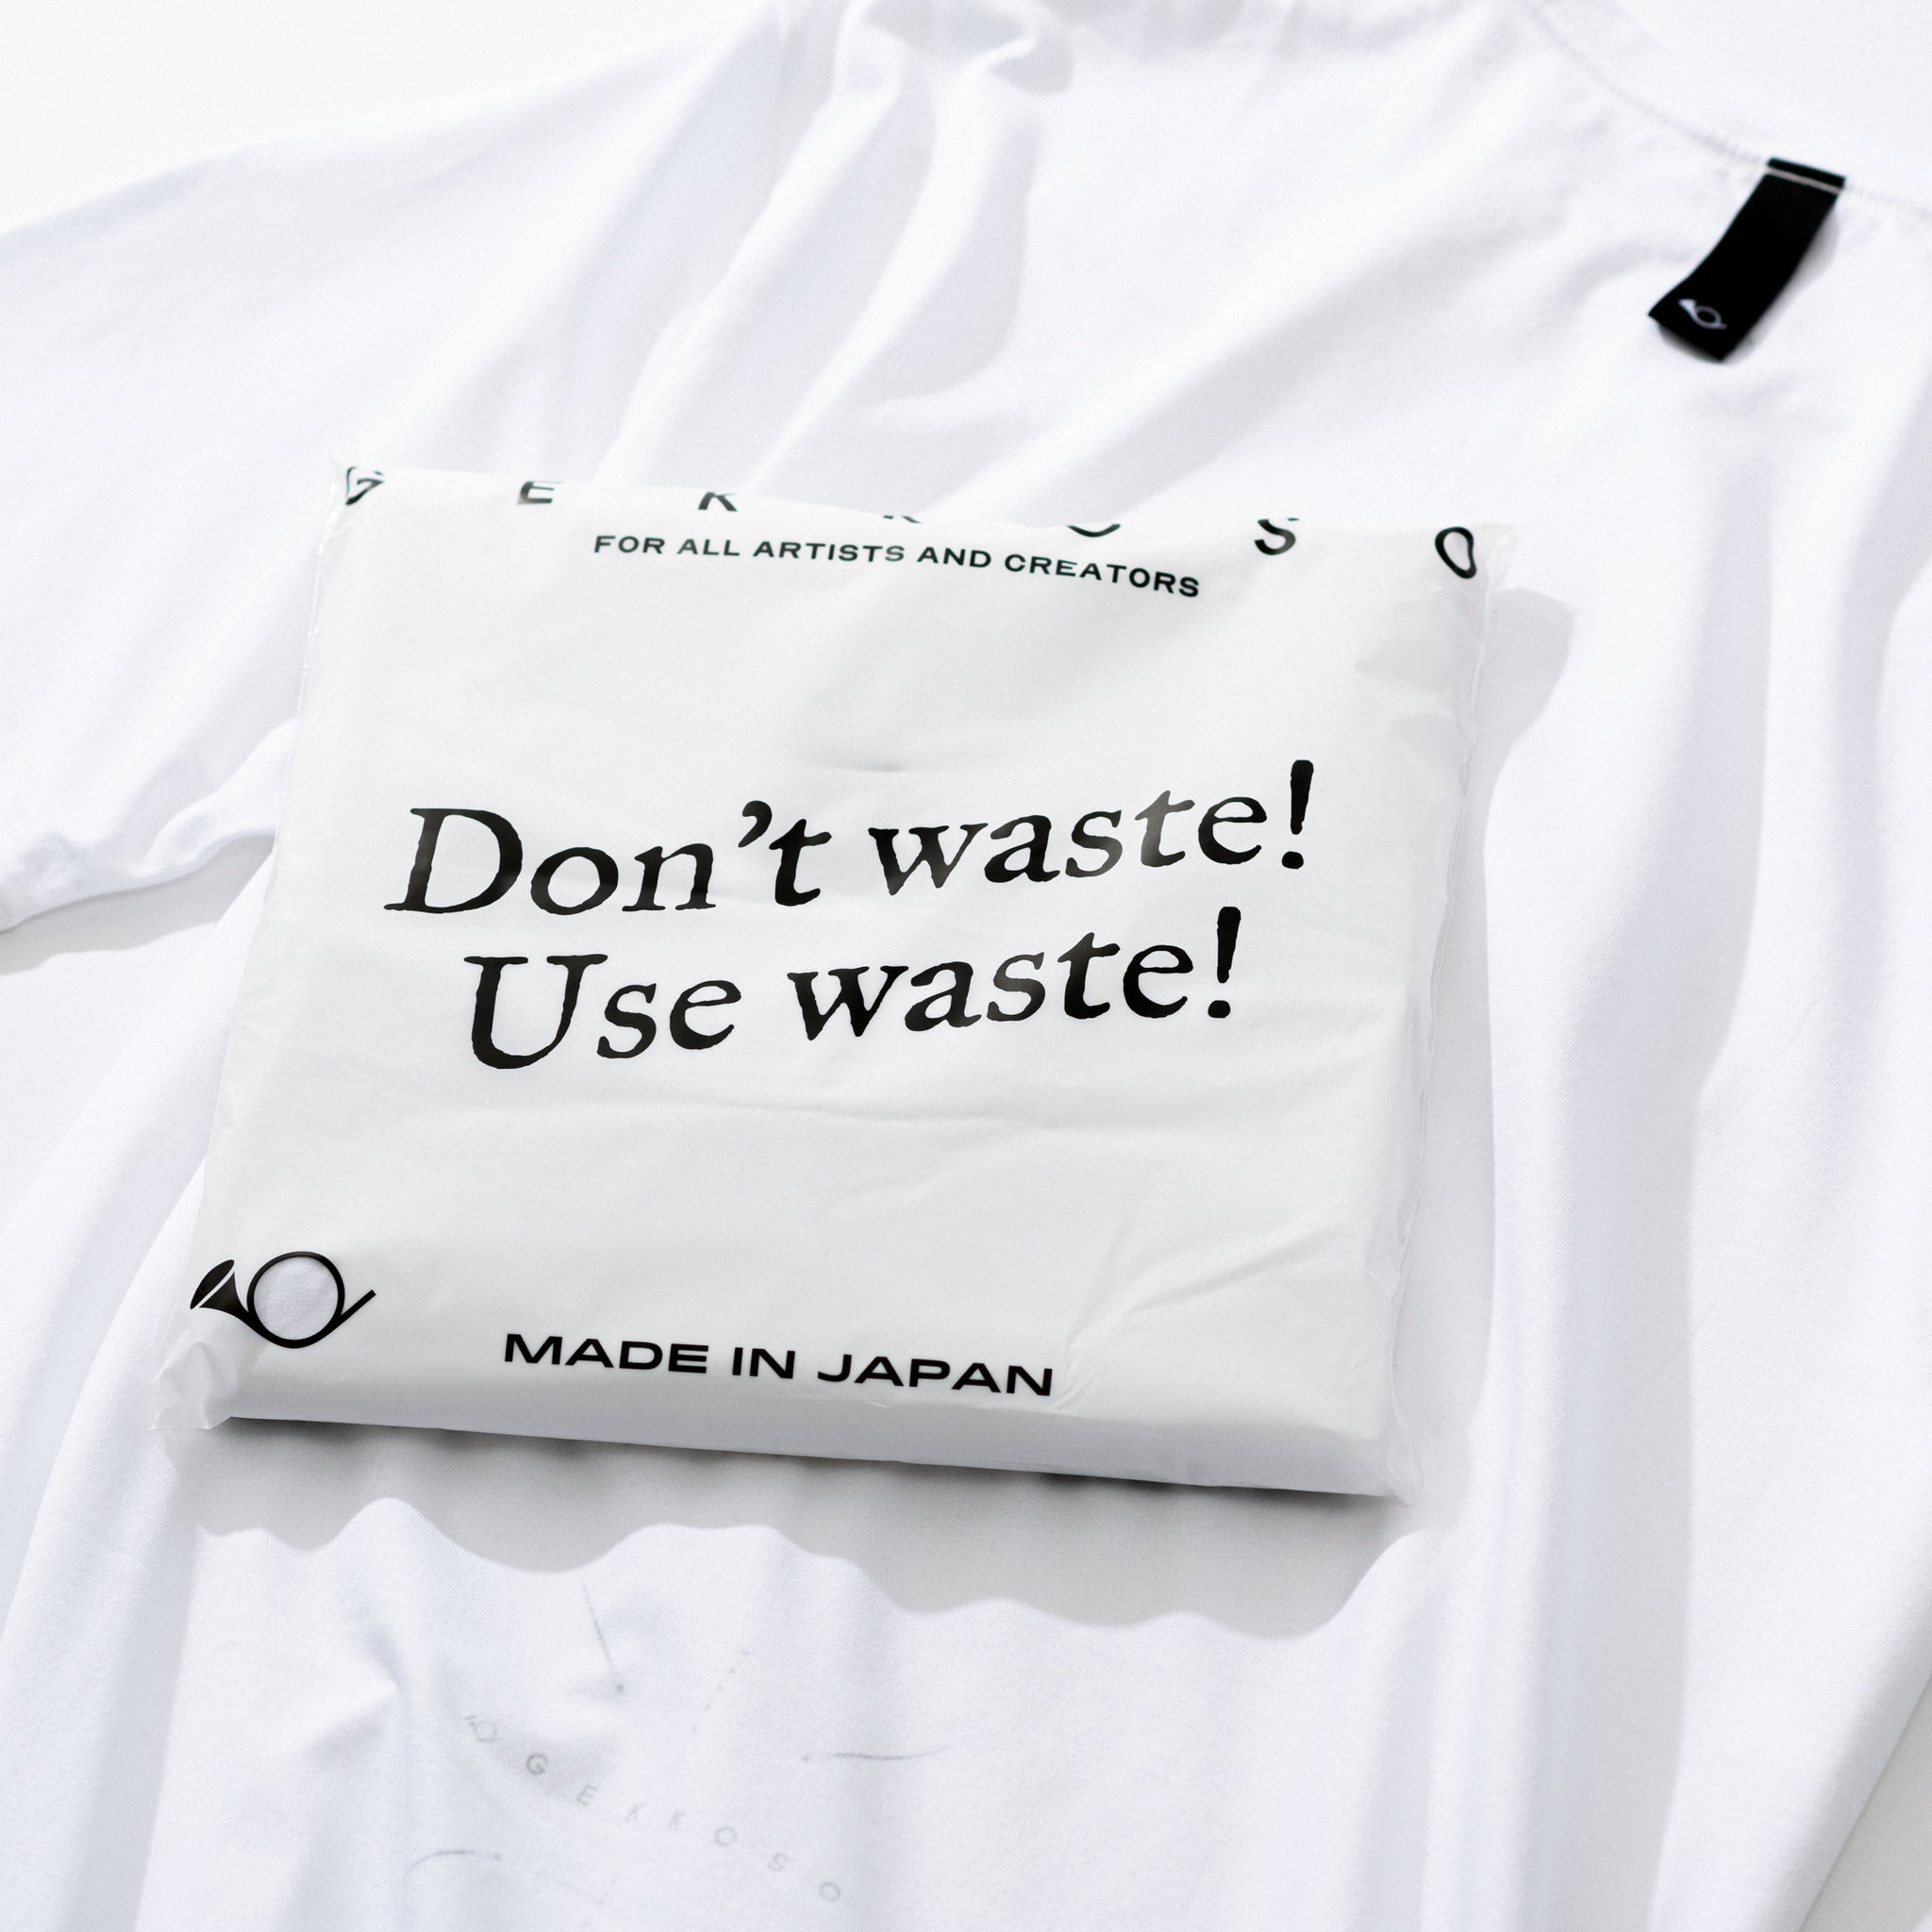 Gekkoso ”Waste” T-shirt